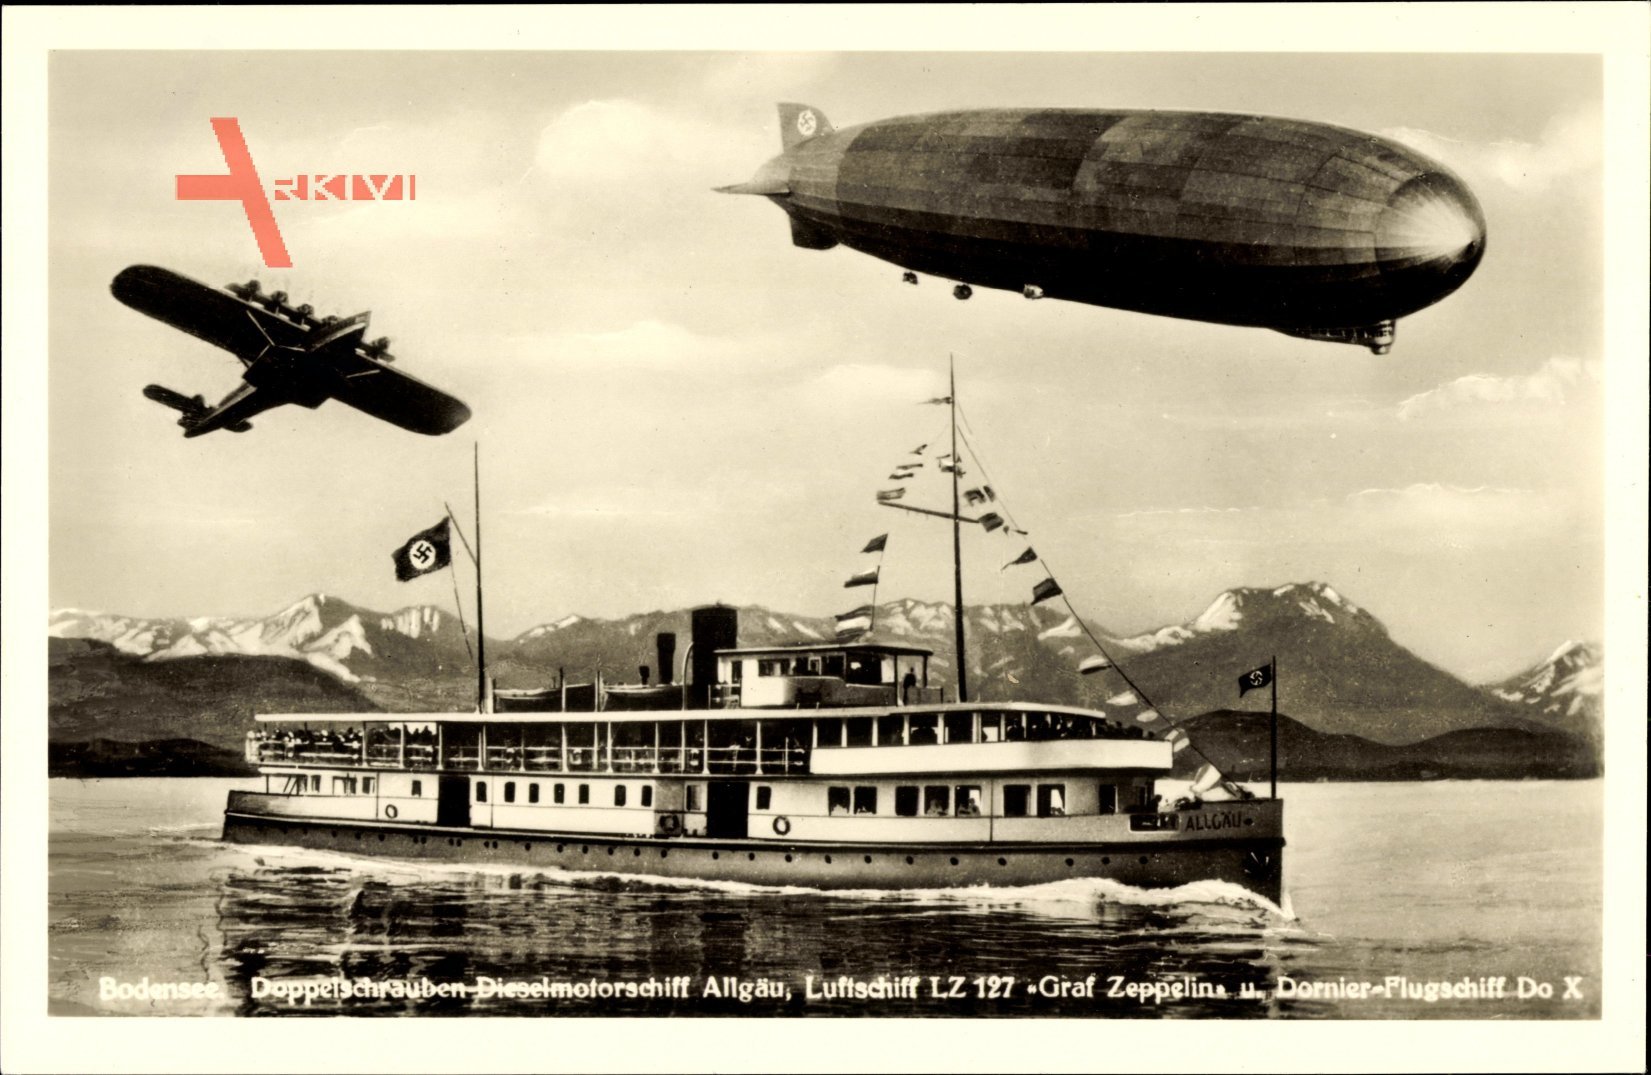 Bodensee, Doppelschraubenmotorschiff Allgäu, Luftschiff LZ 127 Graf Zeppelin, Dornier Flugschiff